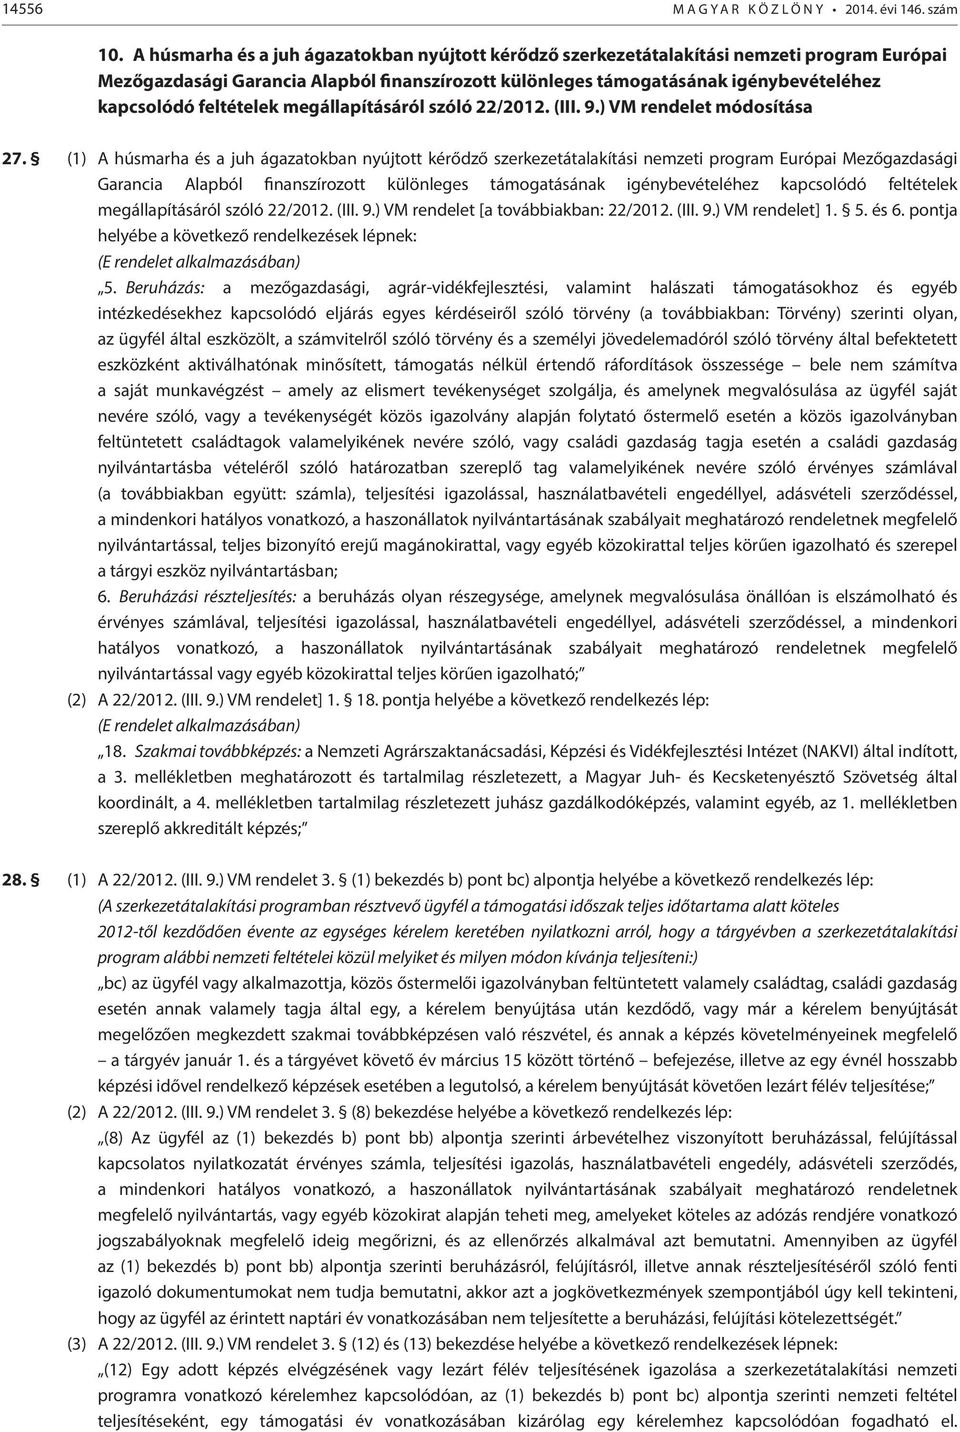 feltételek megállapításáról szóló 22/2012. (III. 9.) VM rendelet módosítása 27. (1)  feltételek megállapításáról szóló 22/2012. (III. 9.) VM rendelet [a továbbiakban: 22/2012. (III. 9.) VM rendelet] 1.